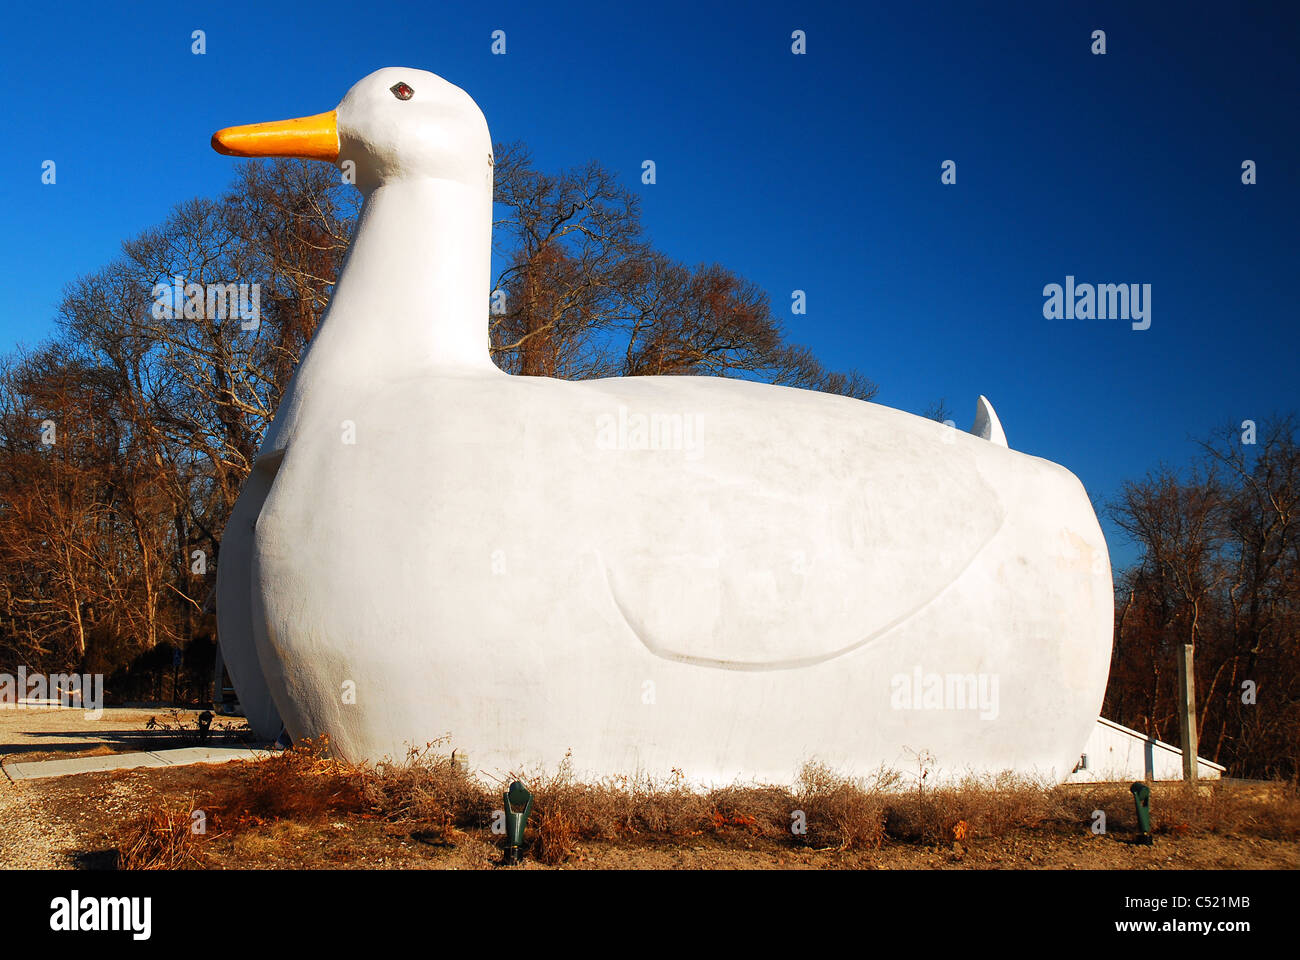 Le Big Duck, un roadside attraction en Flandre, Long Island, NY Banque D'Images